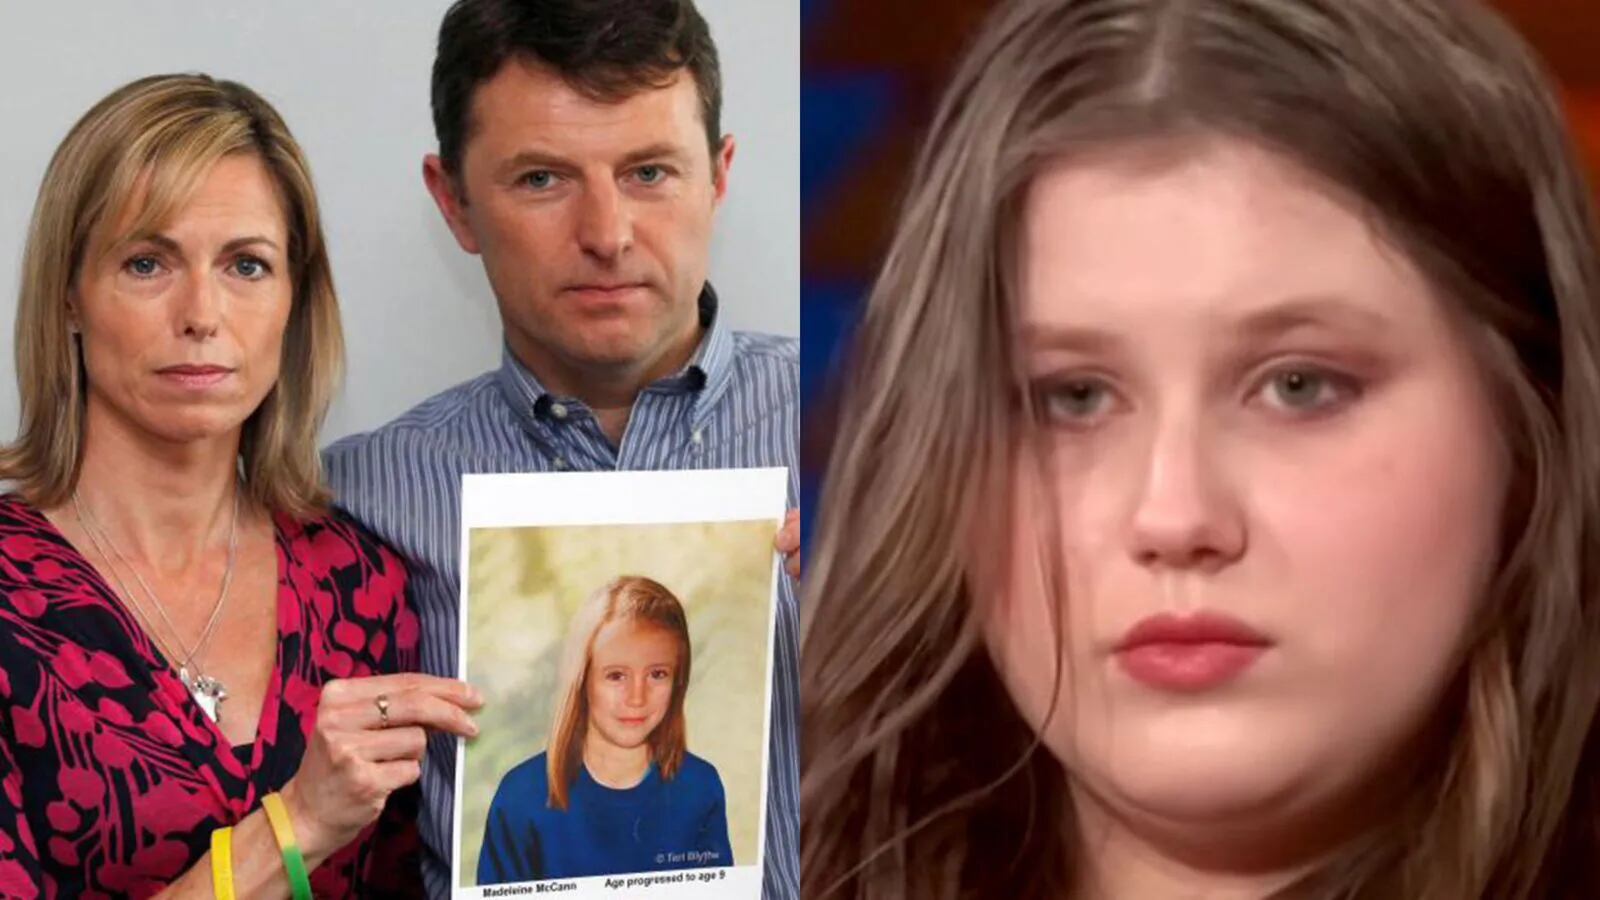 El duro mensaje de los padres de Madeleine McCann tras los resultados de ADN de la joven polaca: “No hay nada”